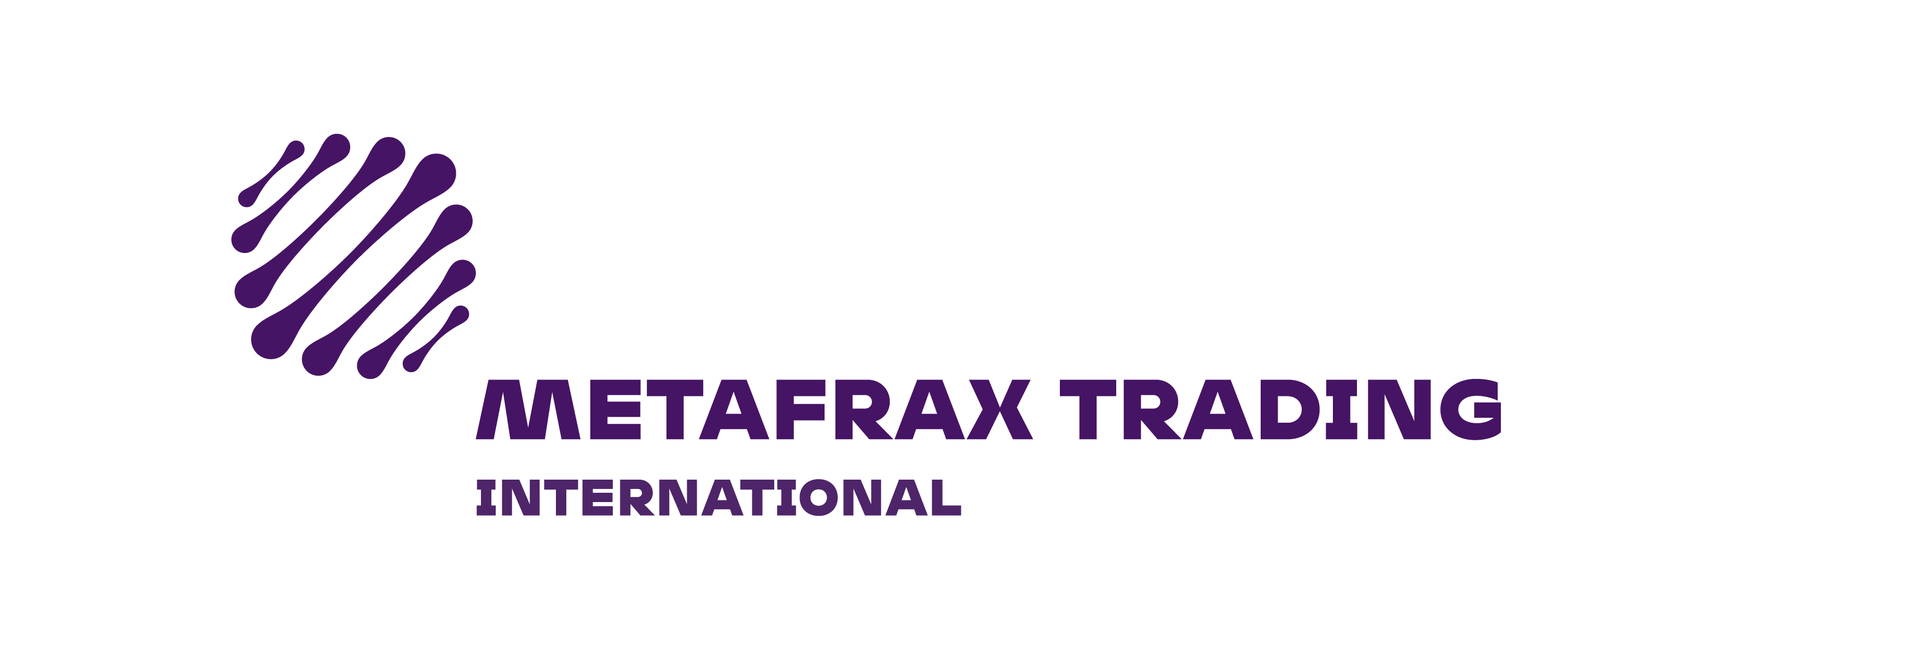 Metafrax Trading International получил статус поставщика класса А